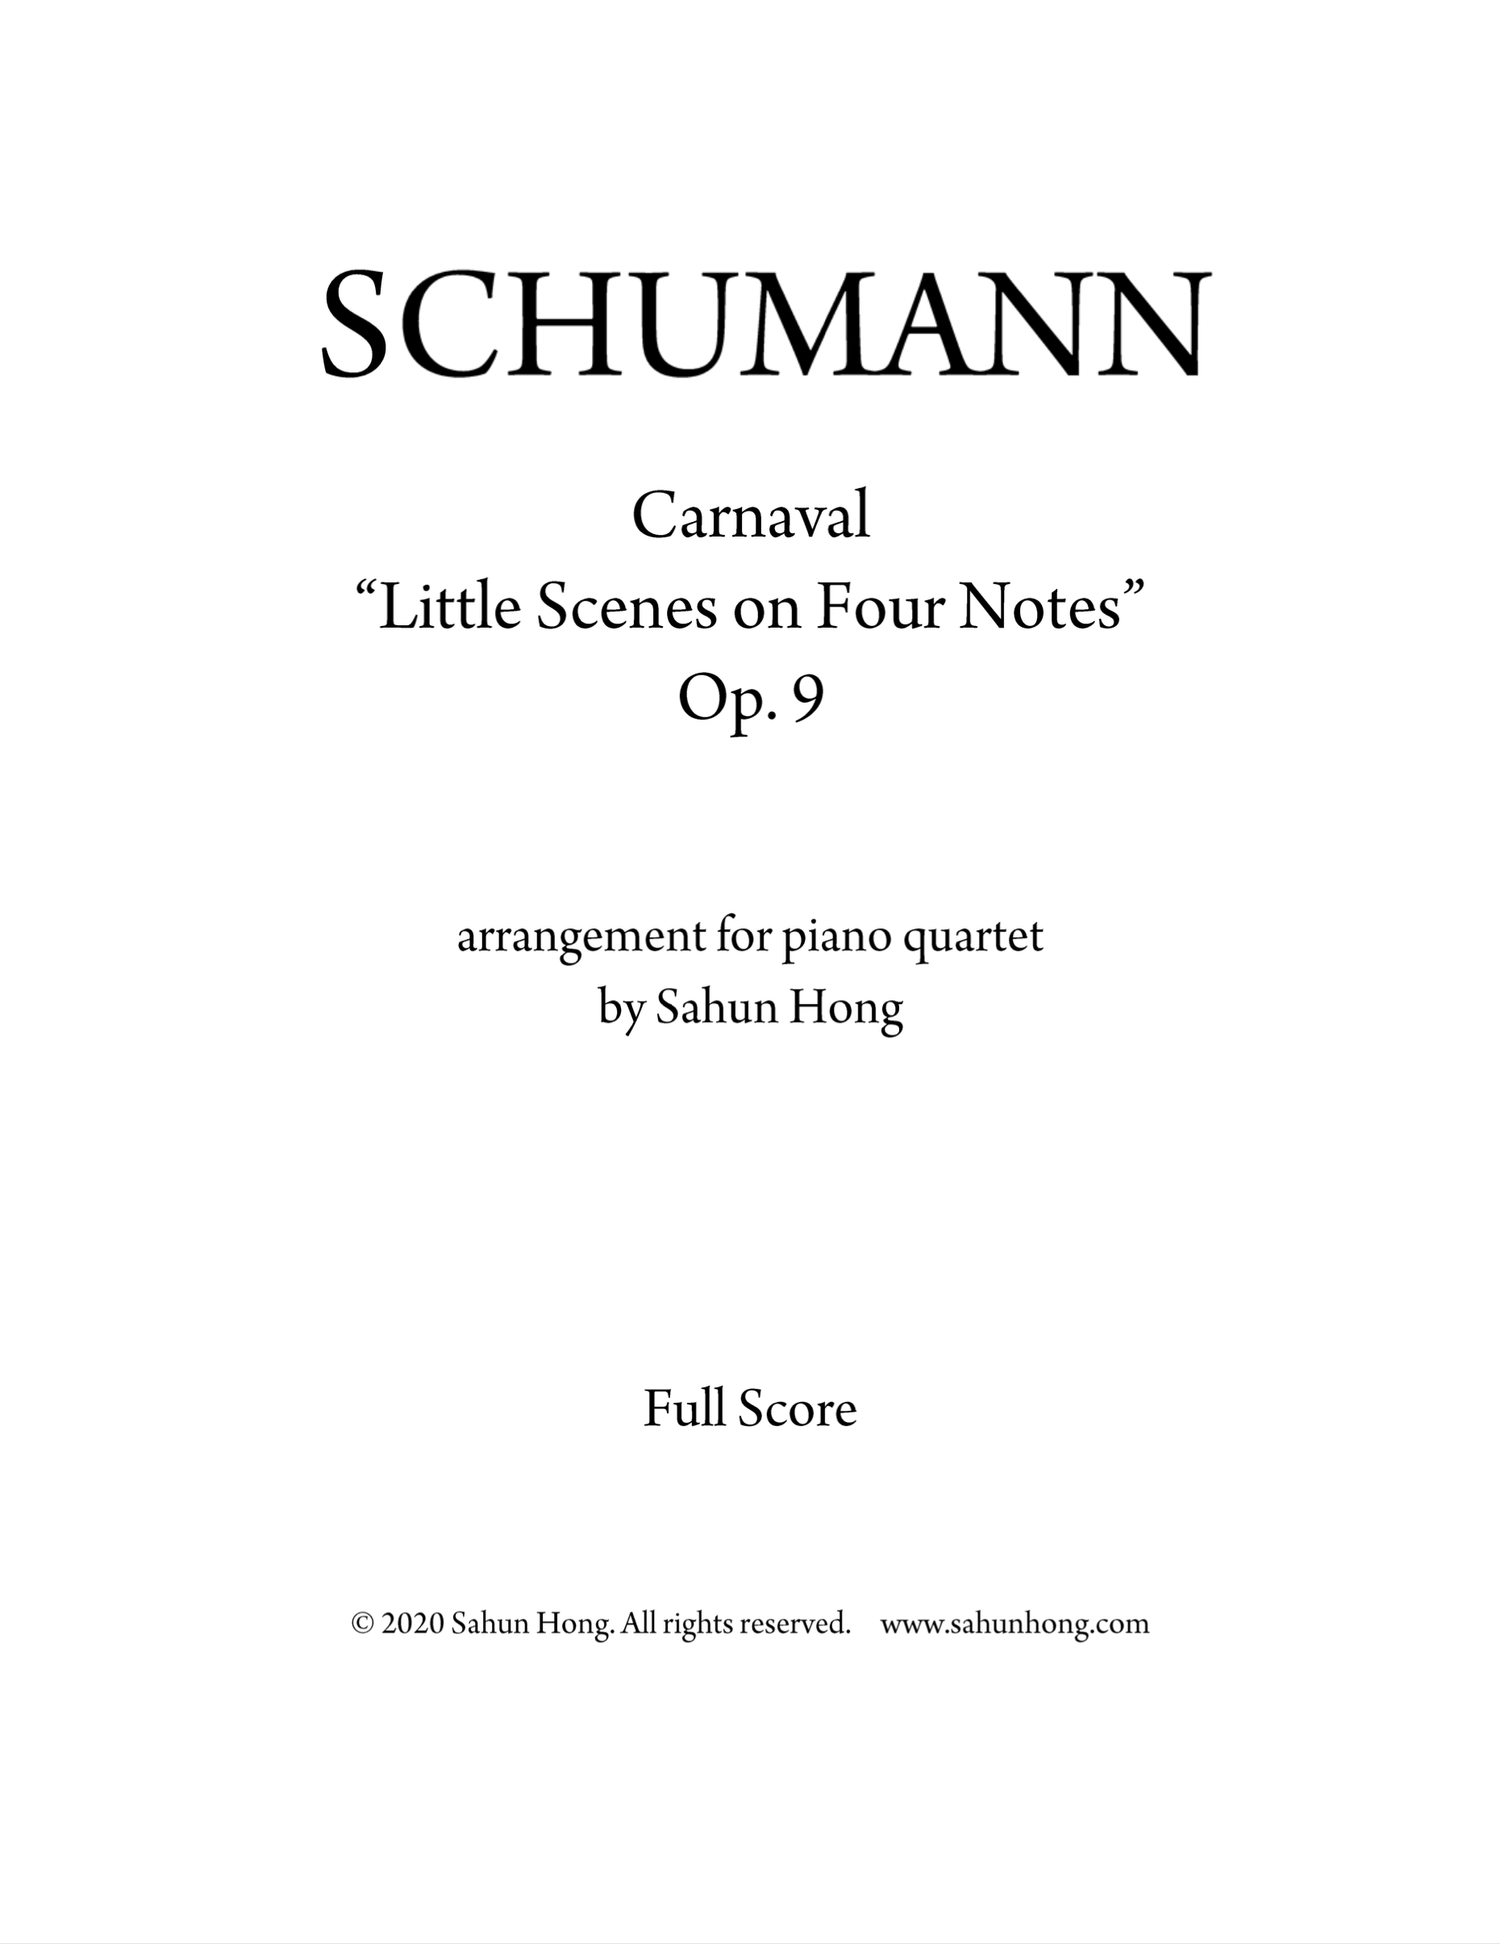 Twinkelen automaat Il Schumann - Carnaval for piano quartet — Sahun Sam Hong